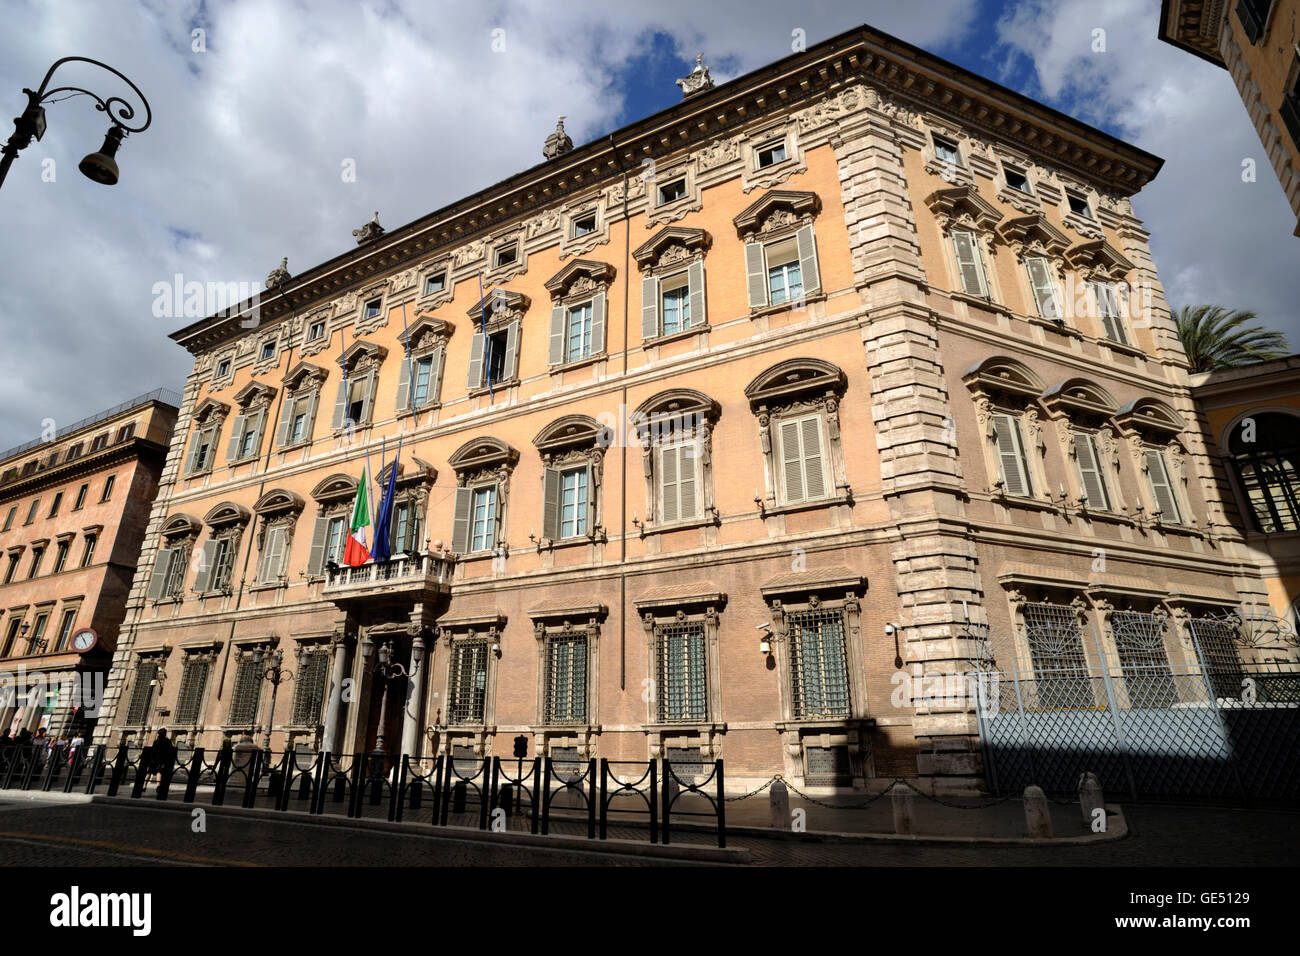 Italy, Rome, Palazzo Madama, senate, italian parliament Stock Photo